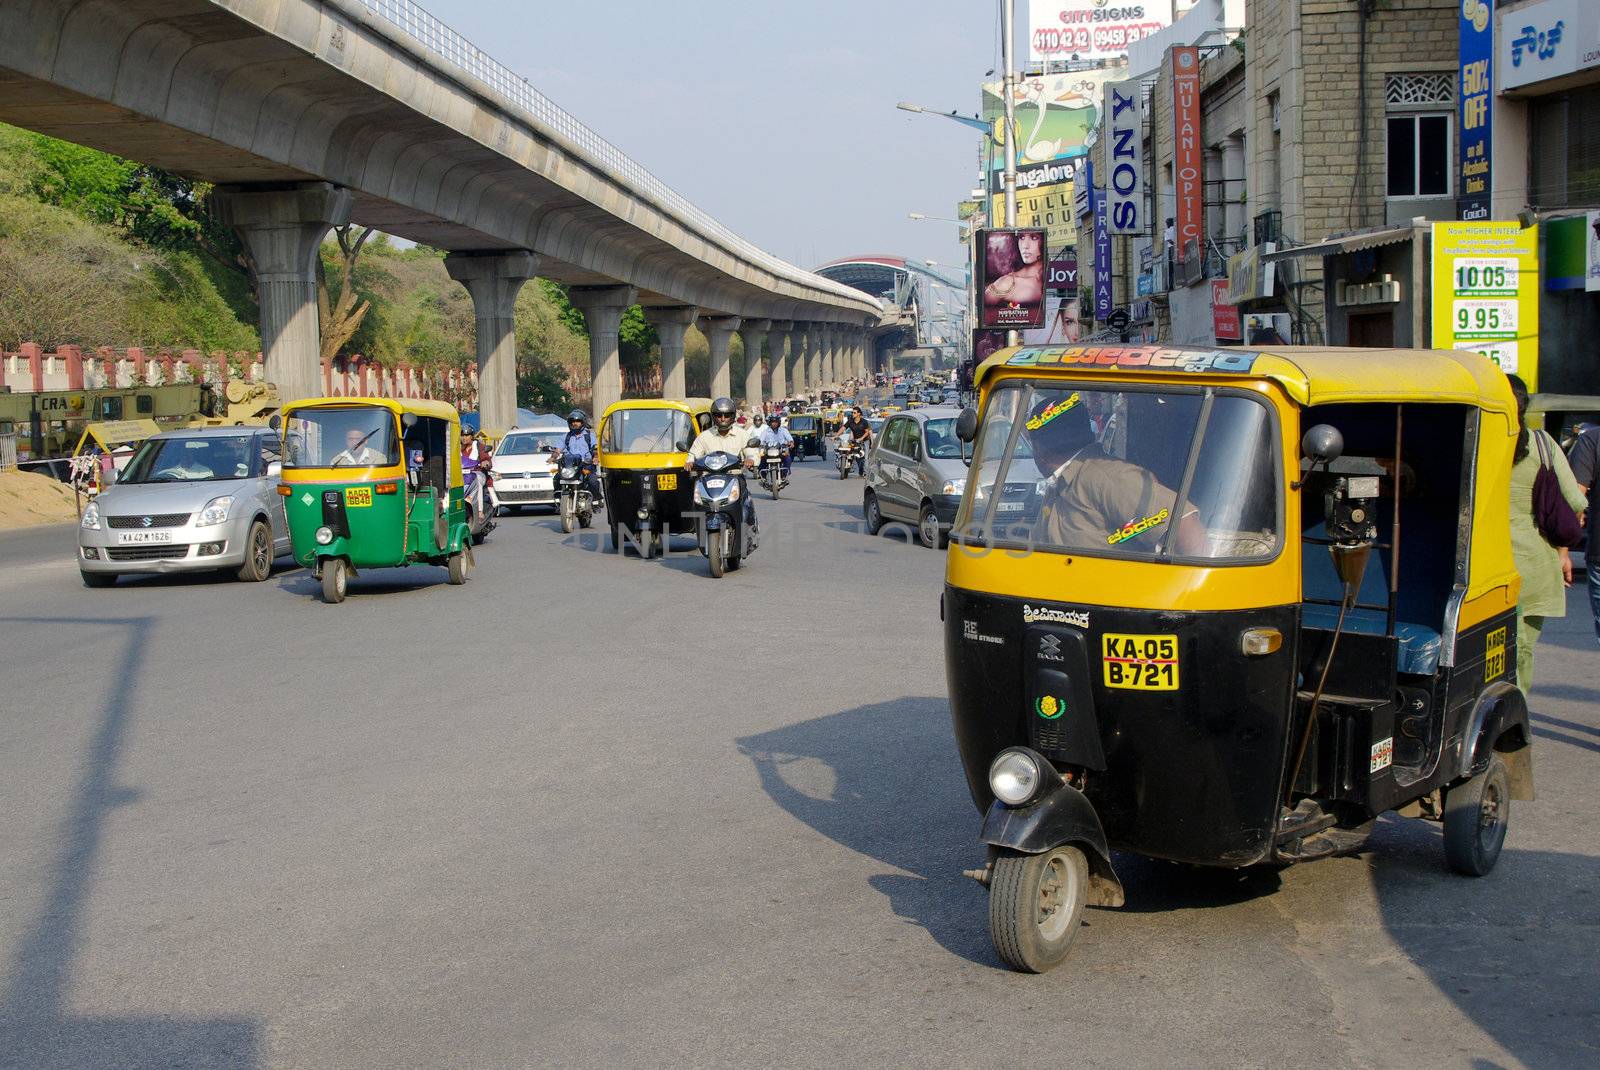 Autorickshaws in Bangalore by Komar